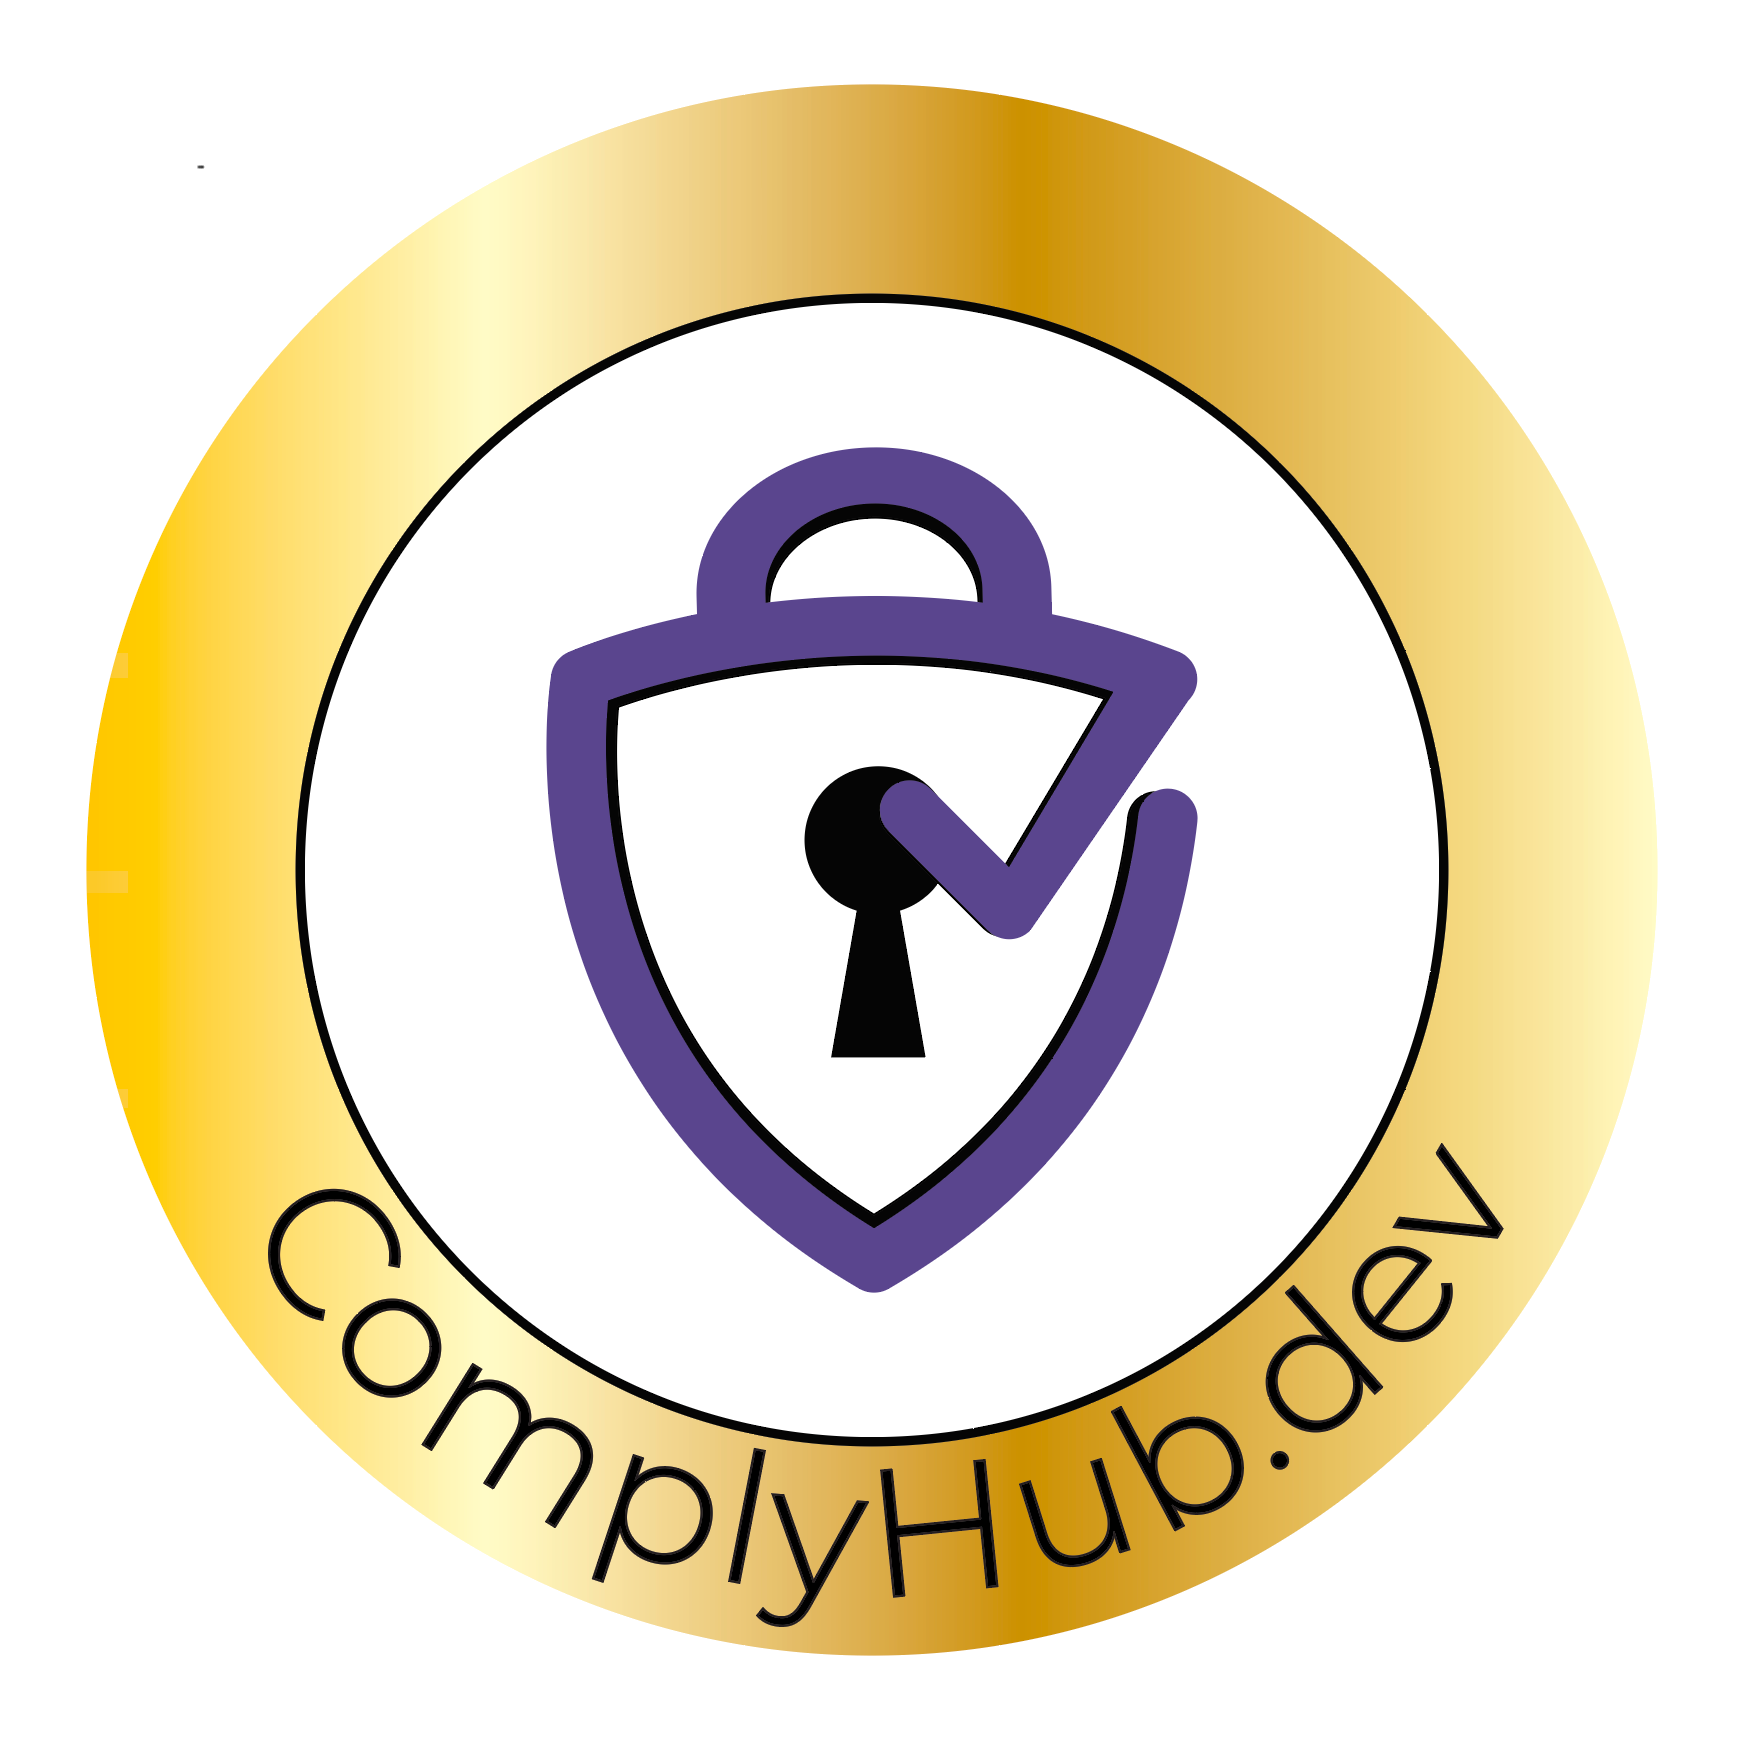 ComplyHub.dev